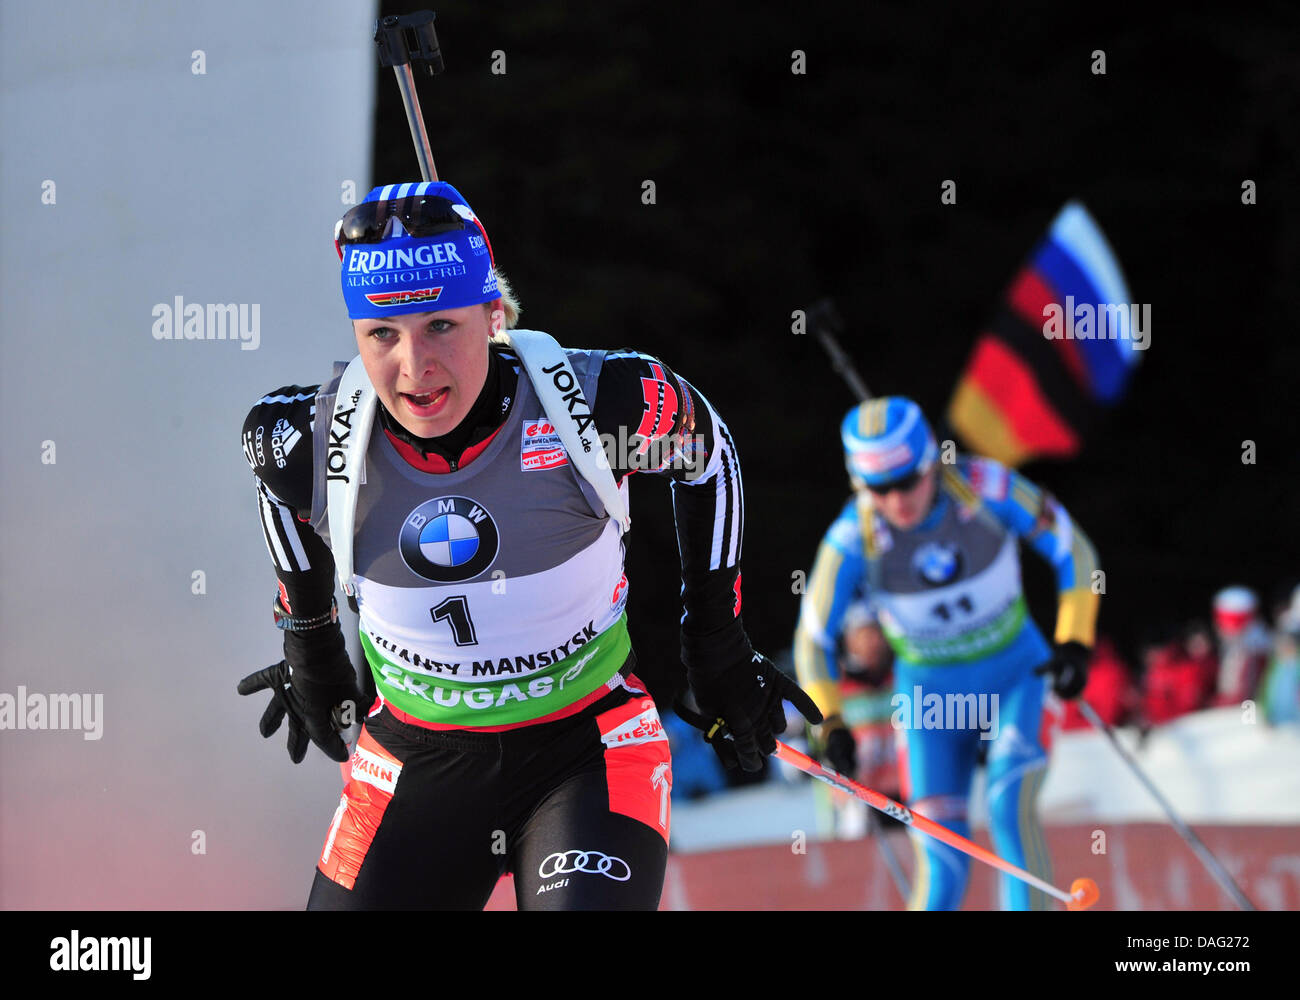 Magdalena Neuner in Deutschland konkurriert, während die Frauen 12,5 km Massenstart bei den Biathlon-Weltmeisterschaften in A.V. Philipenko Winter Sports Centre in Chanty-Mansijsk, Russland, 12. März 2011. Foto: Martin Schutt Stockfoto